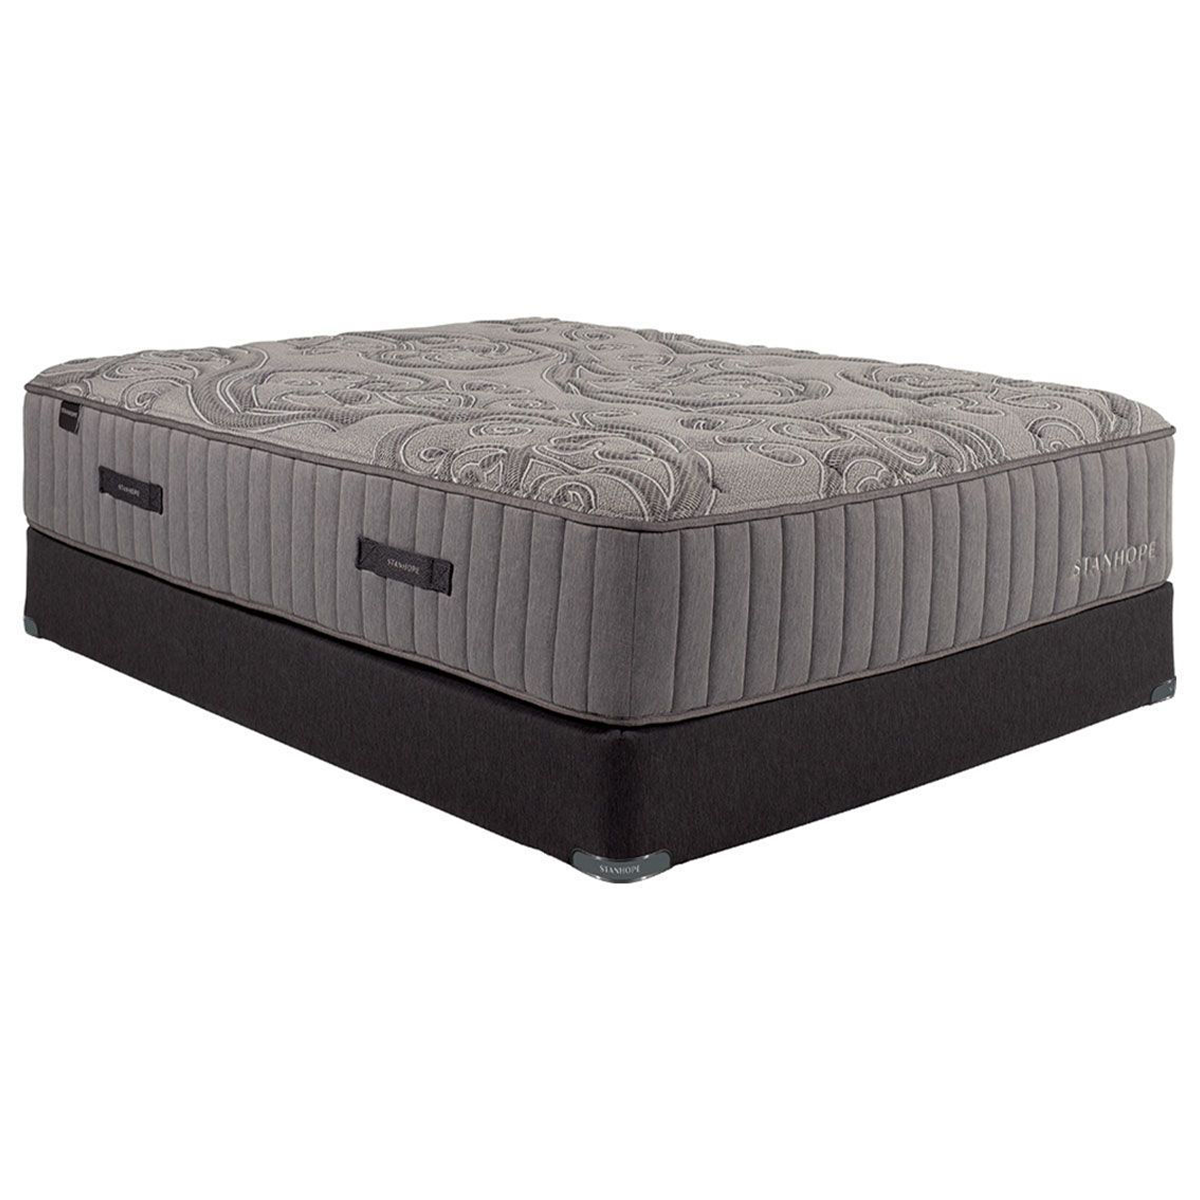 Image of queen mattress set